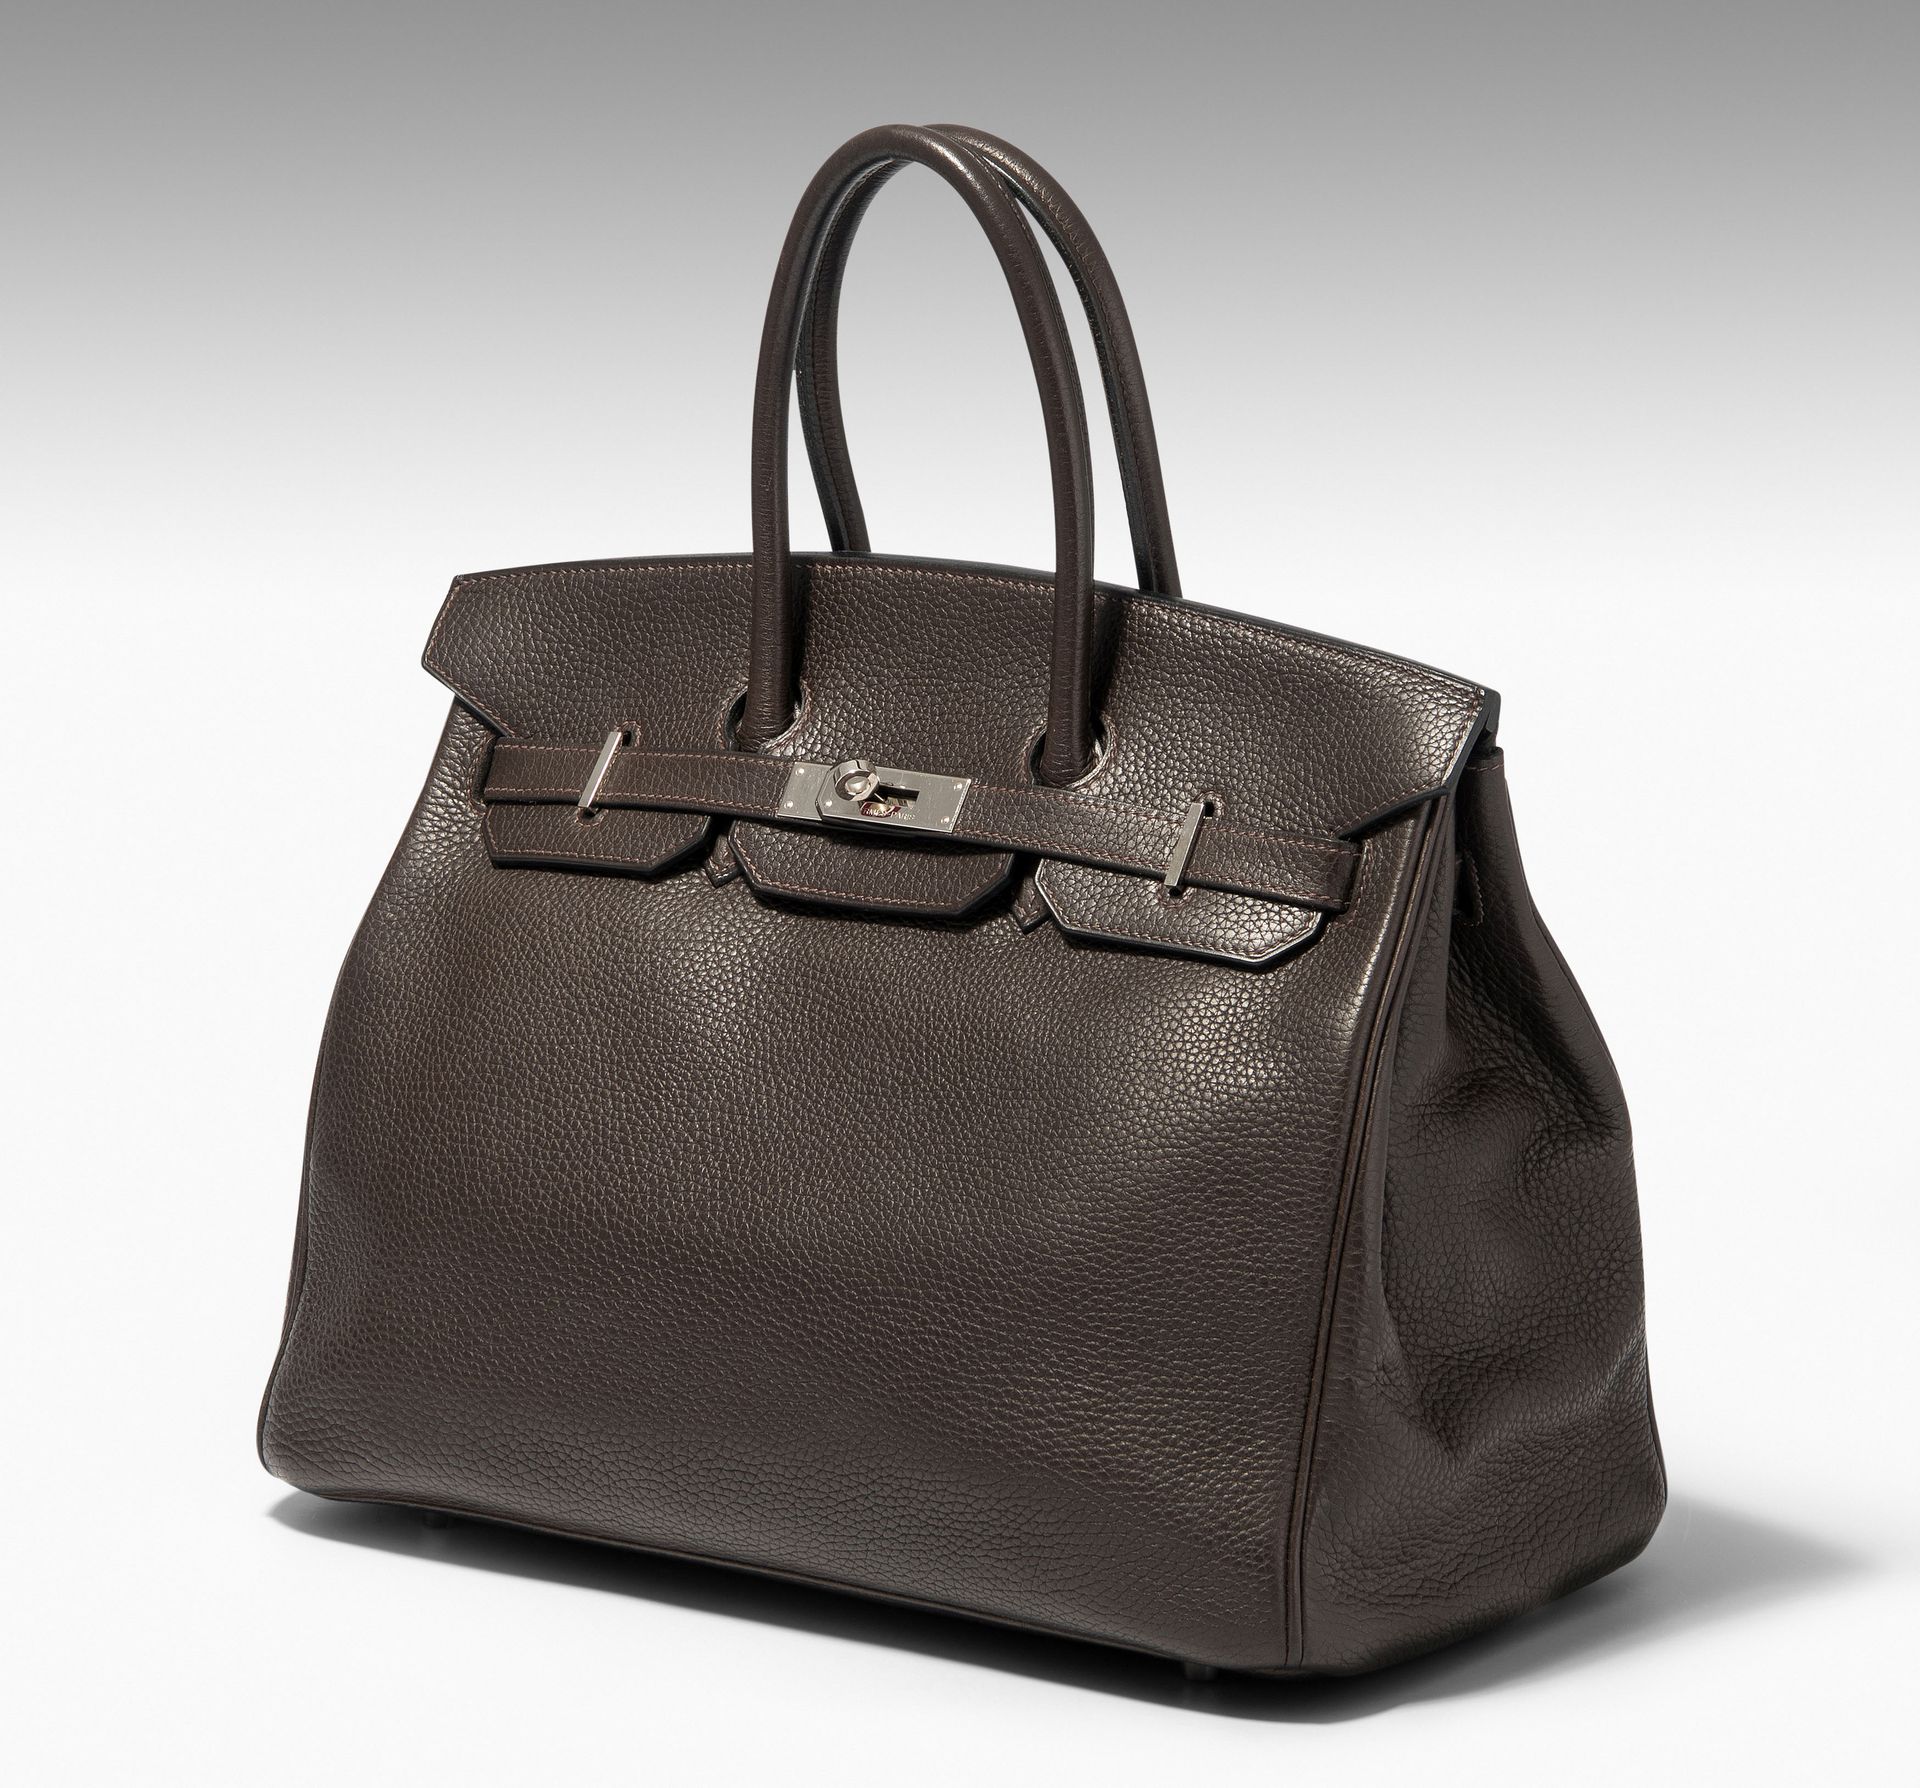 Hermès, Handtasche "Birkin" 35 cm Hermès, handbag "Birkin" 35 cm.
2006. Made of &hellip;